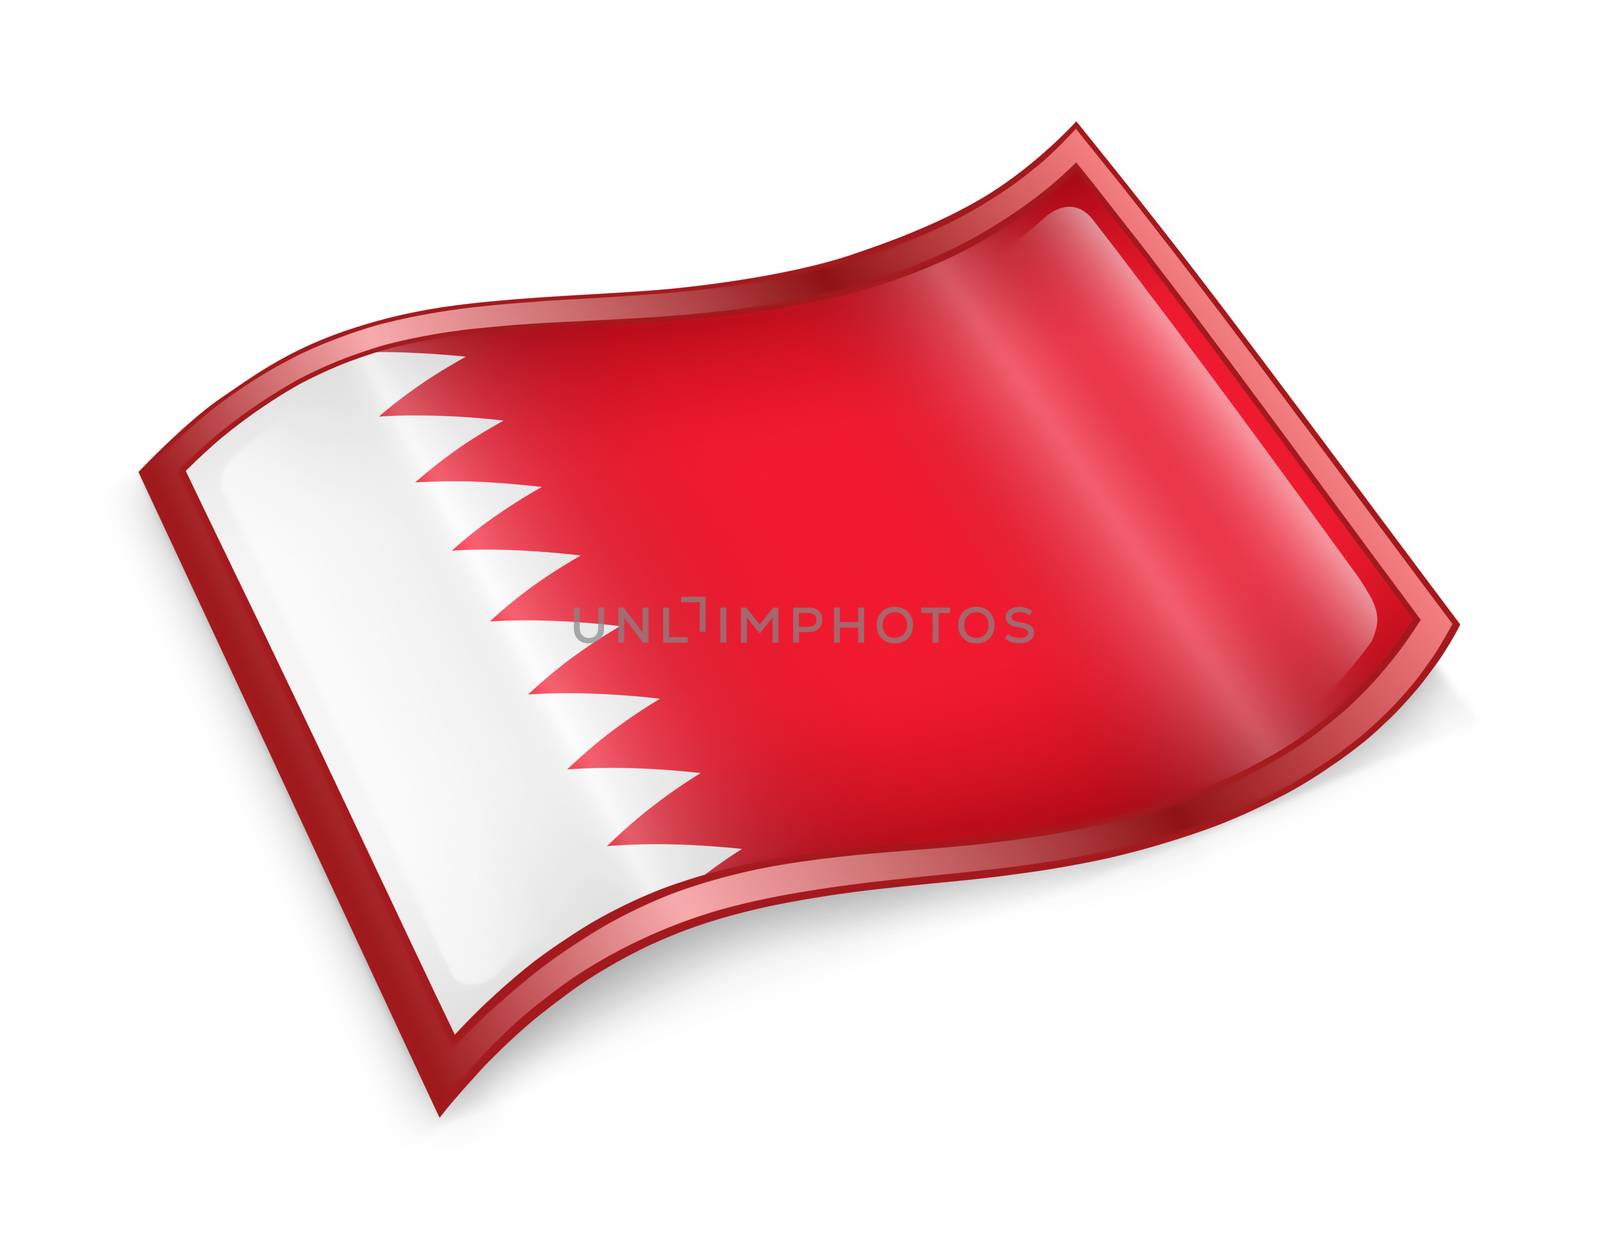 Bahraini Flag icon, isolated on white background